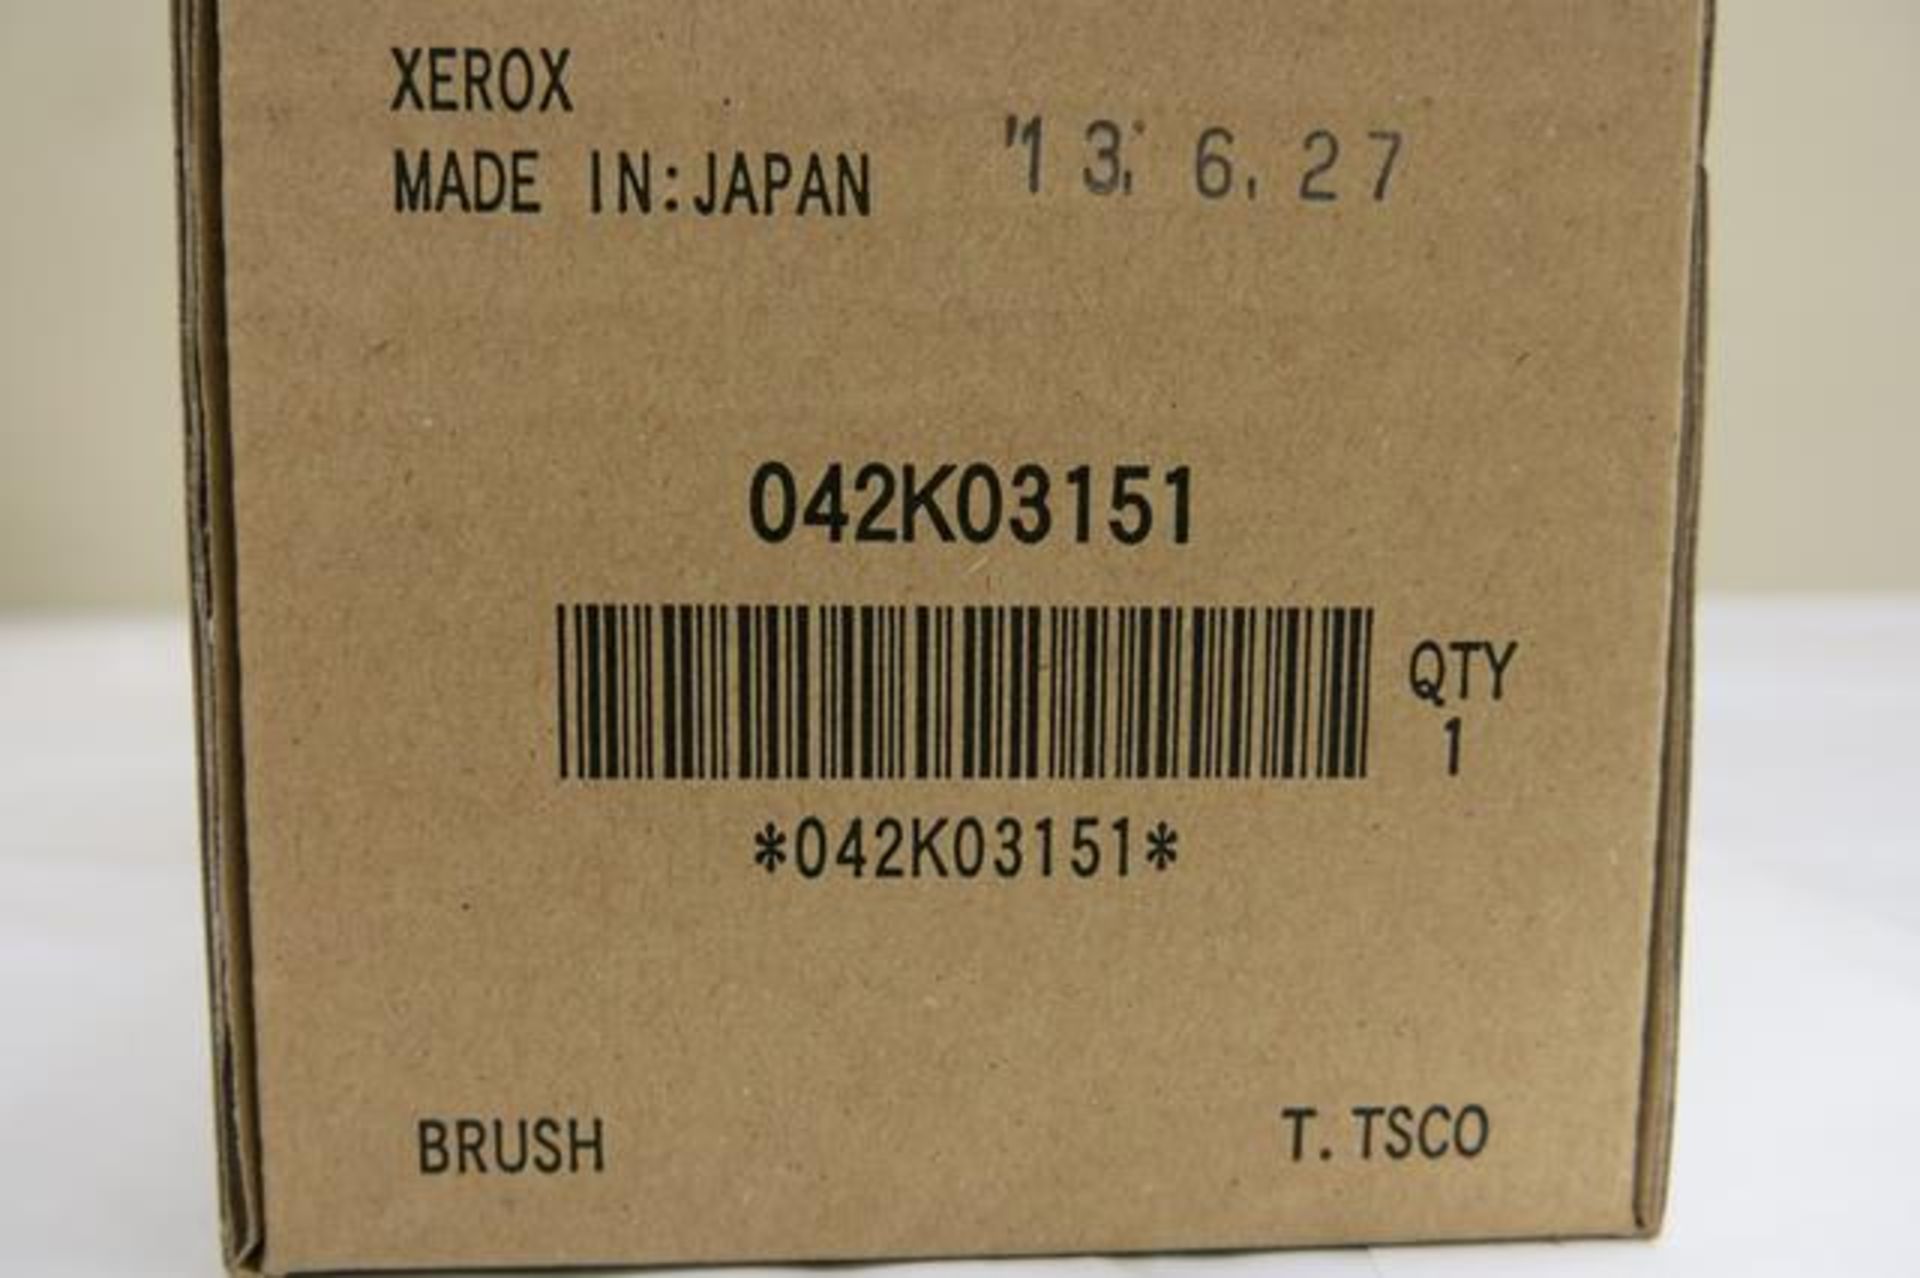 XEROX, 042K03151, BRUSH - Image 3 of 3